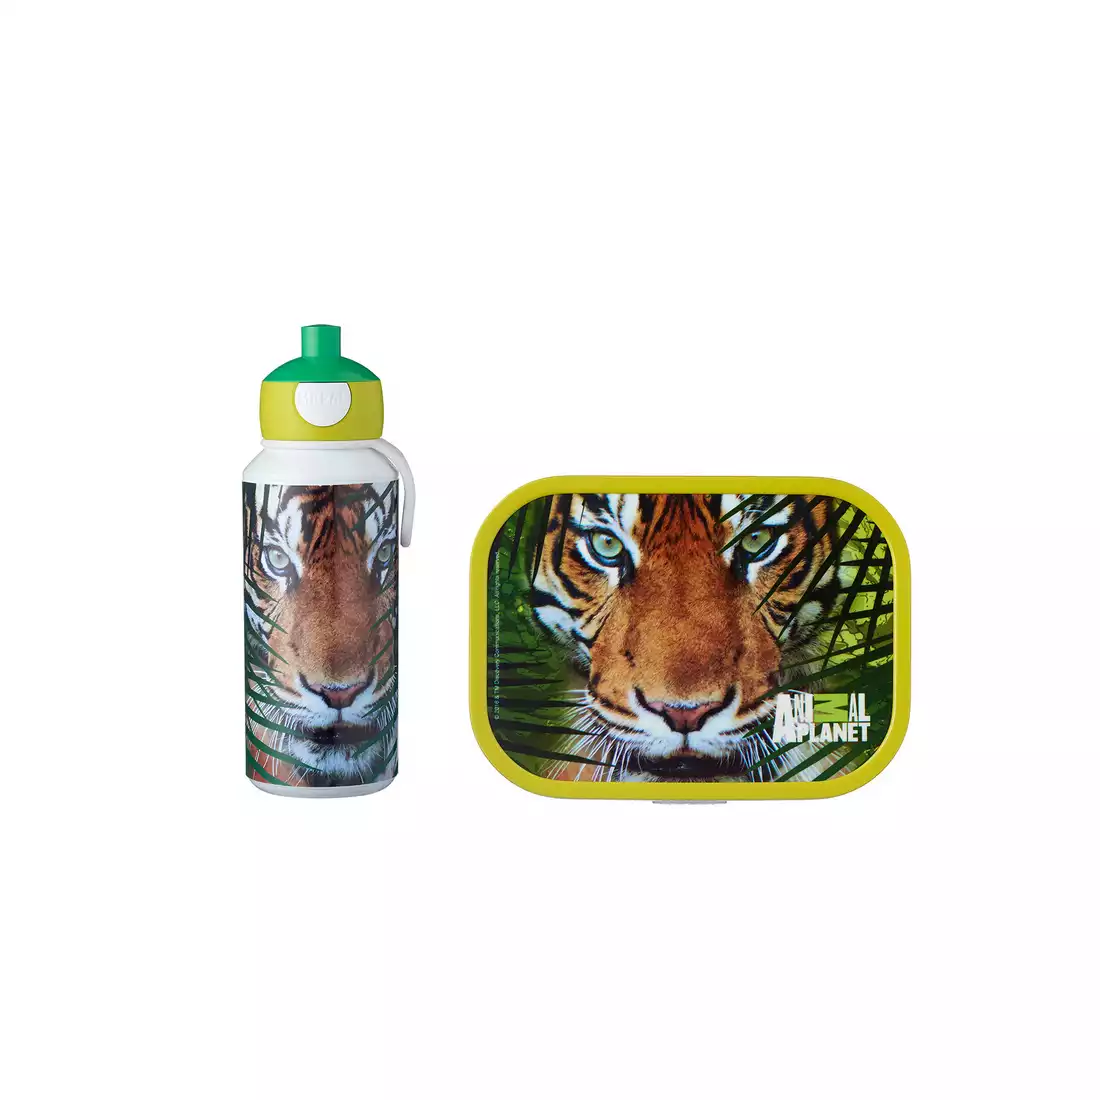 Mepal Campus Lunch set Animal Planet Tiger gyerek készlet vizes palack + lunchbox